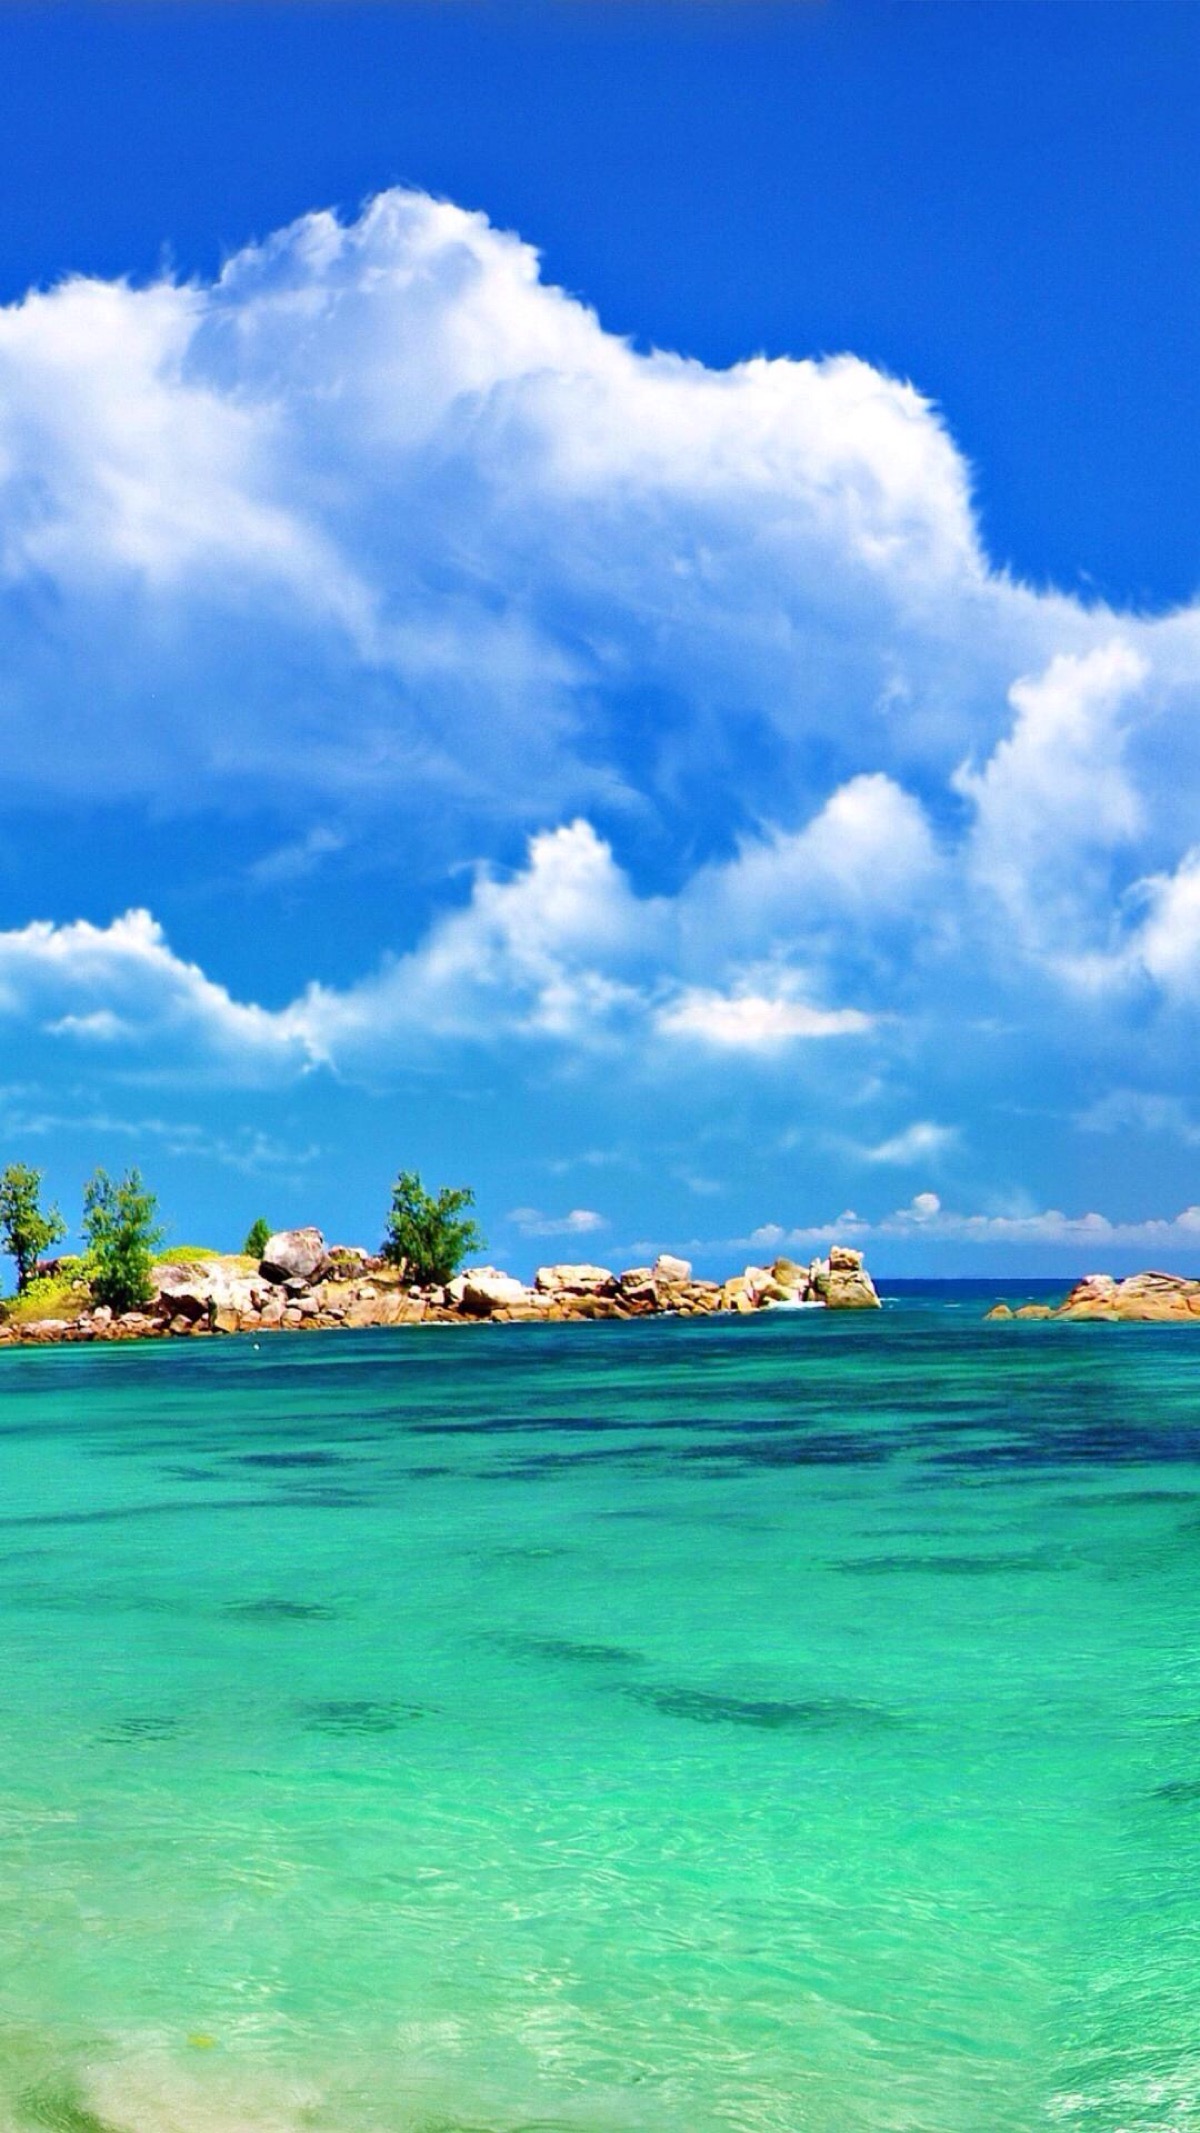 唯美自然风景蓝天碧海沙滩海洋唯美风景iphone手机壁纸唯美壁纸